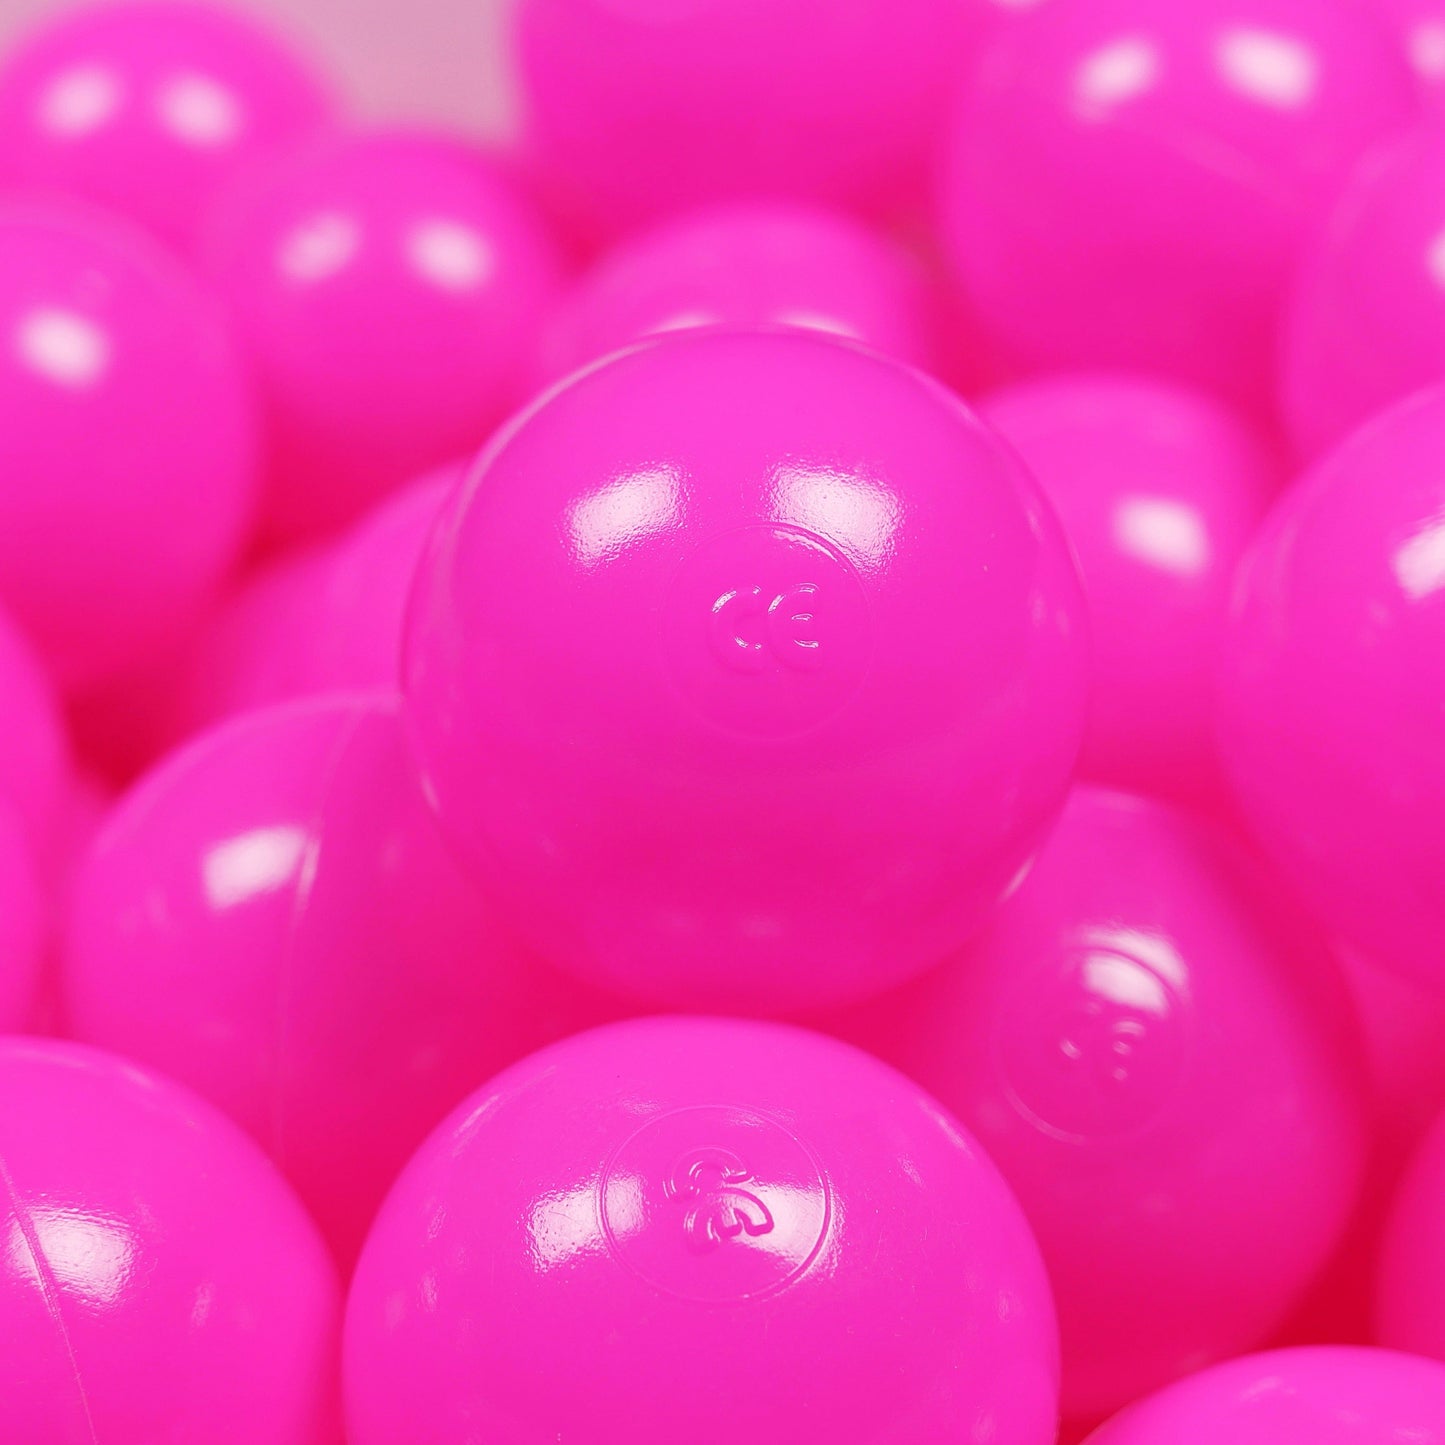 Balles de jeu ø7cm 500 pièces rose